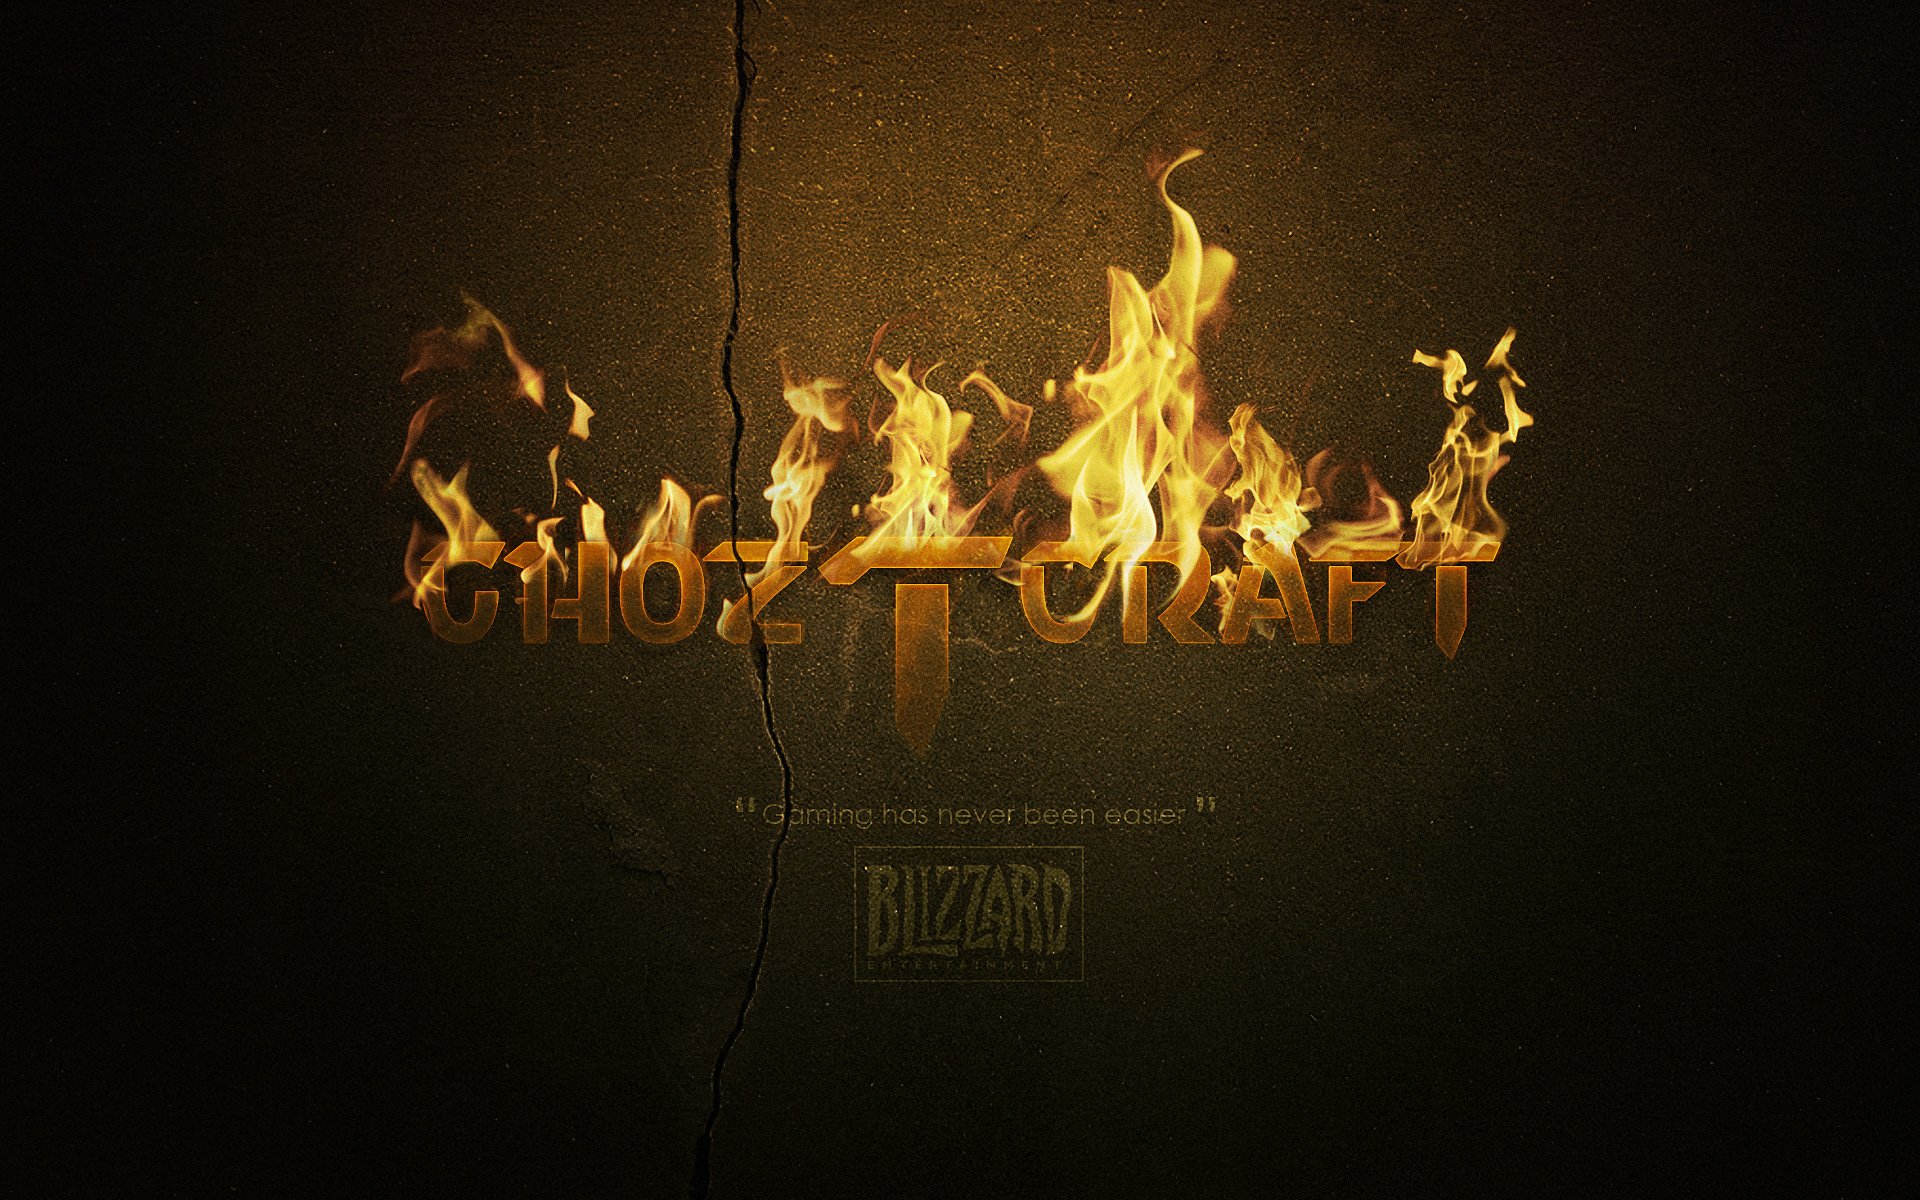 ghoztcraft, Fire Wallpaper